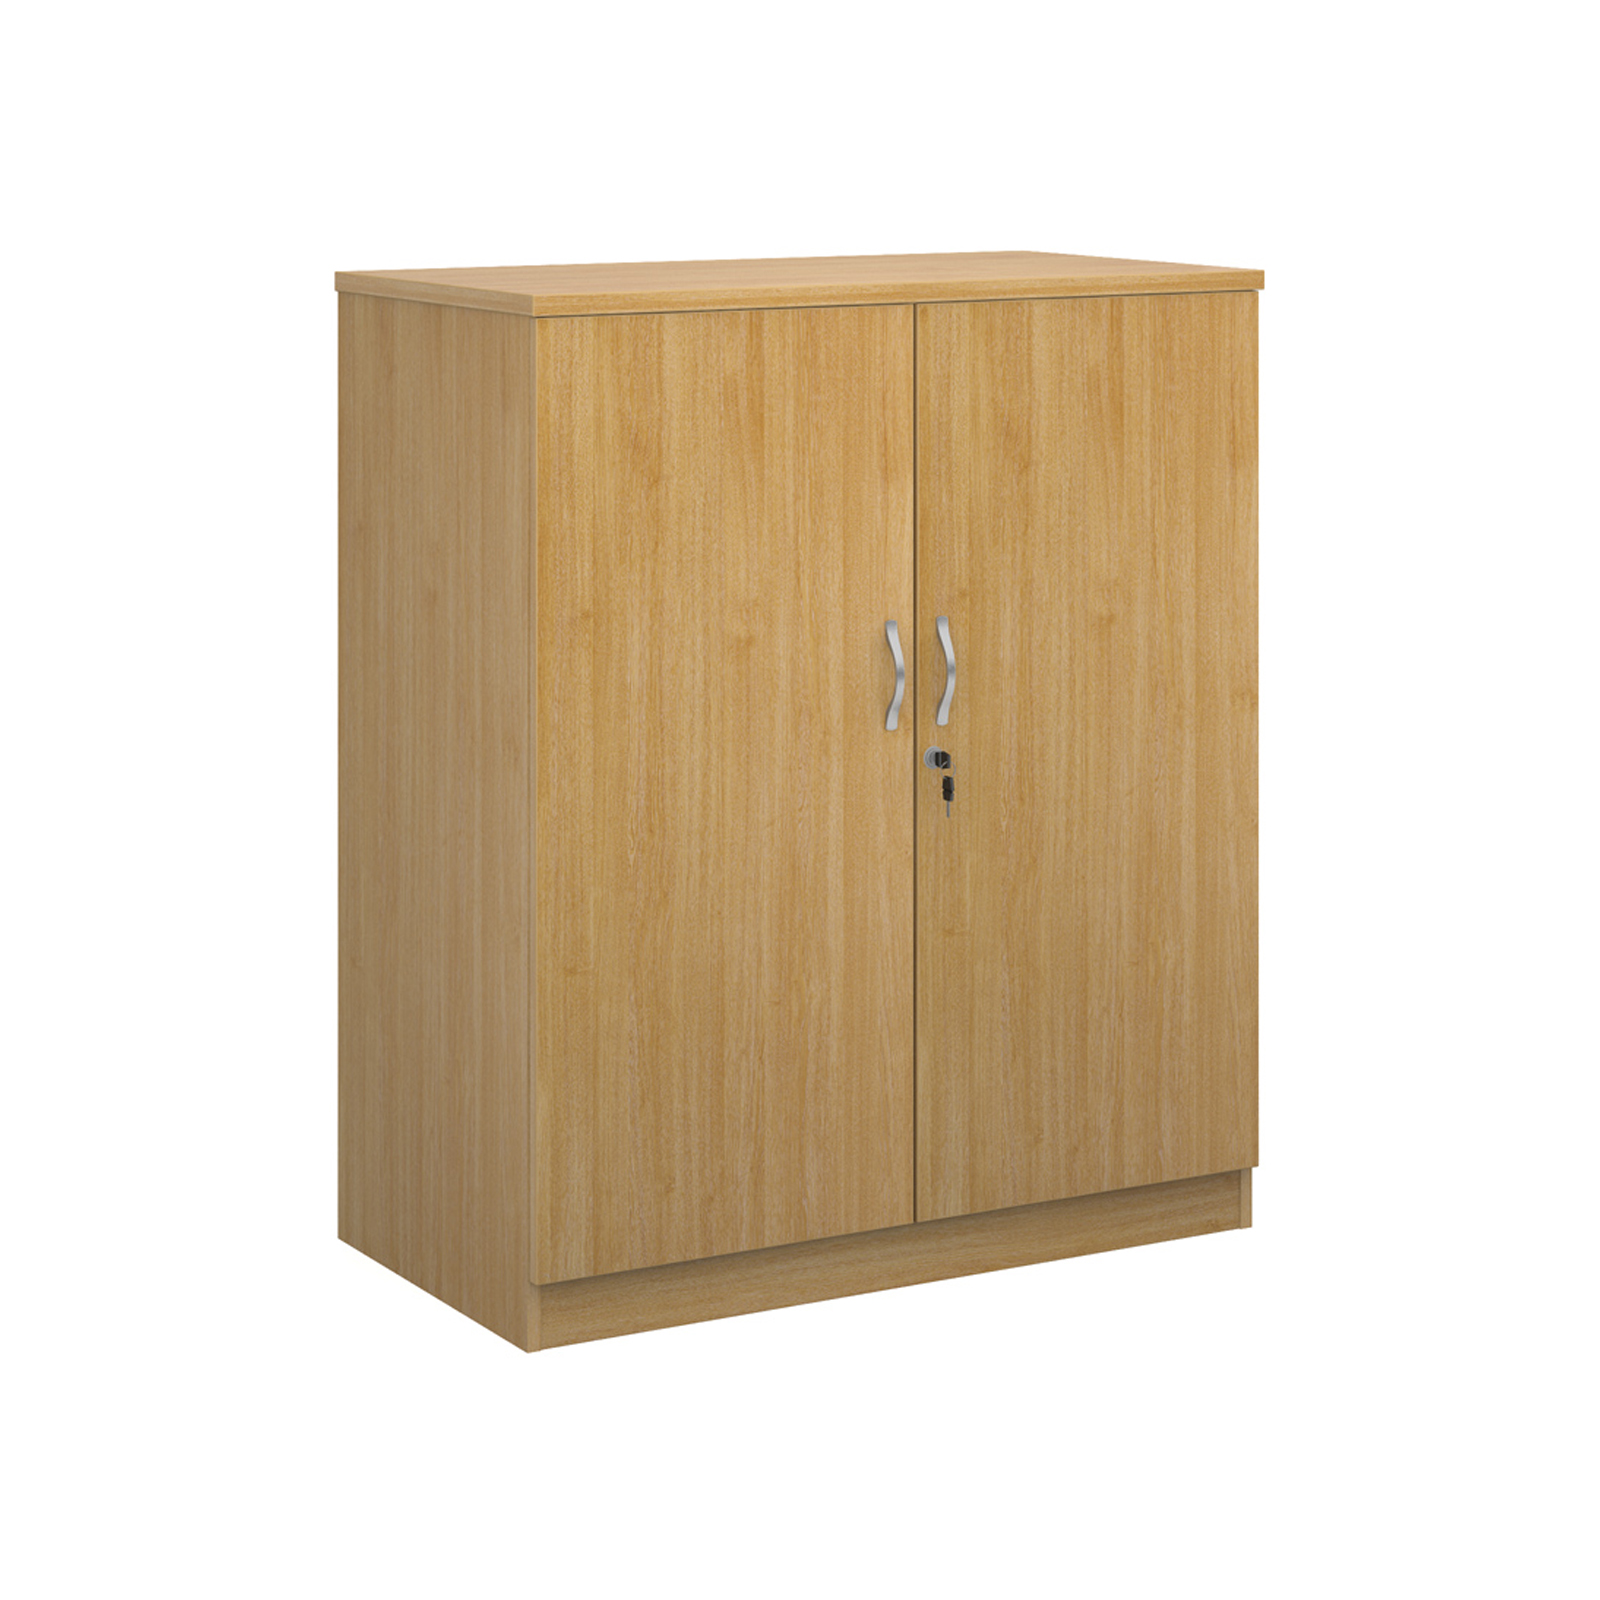 Deluxe Double Door Cupboard with 2 Shelves - Oak